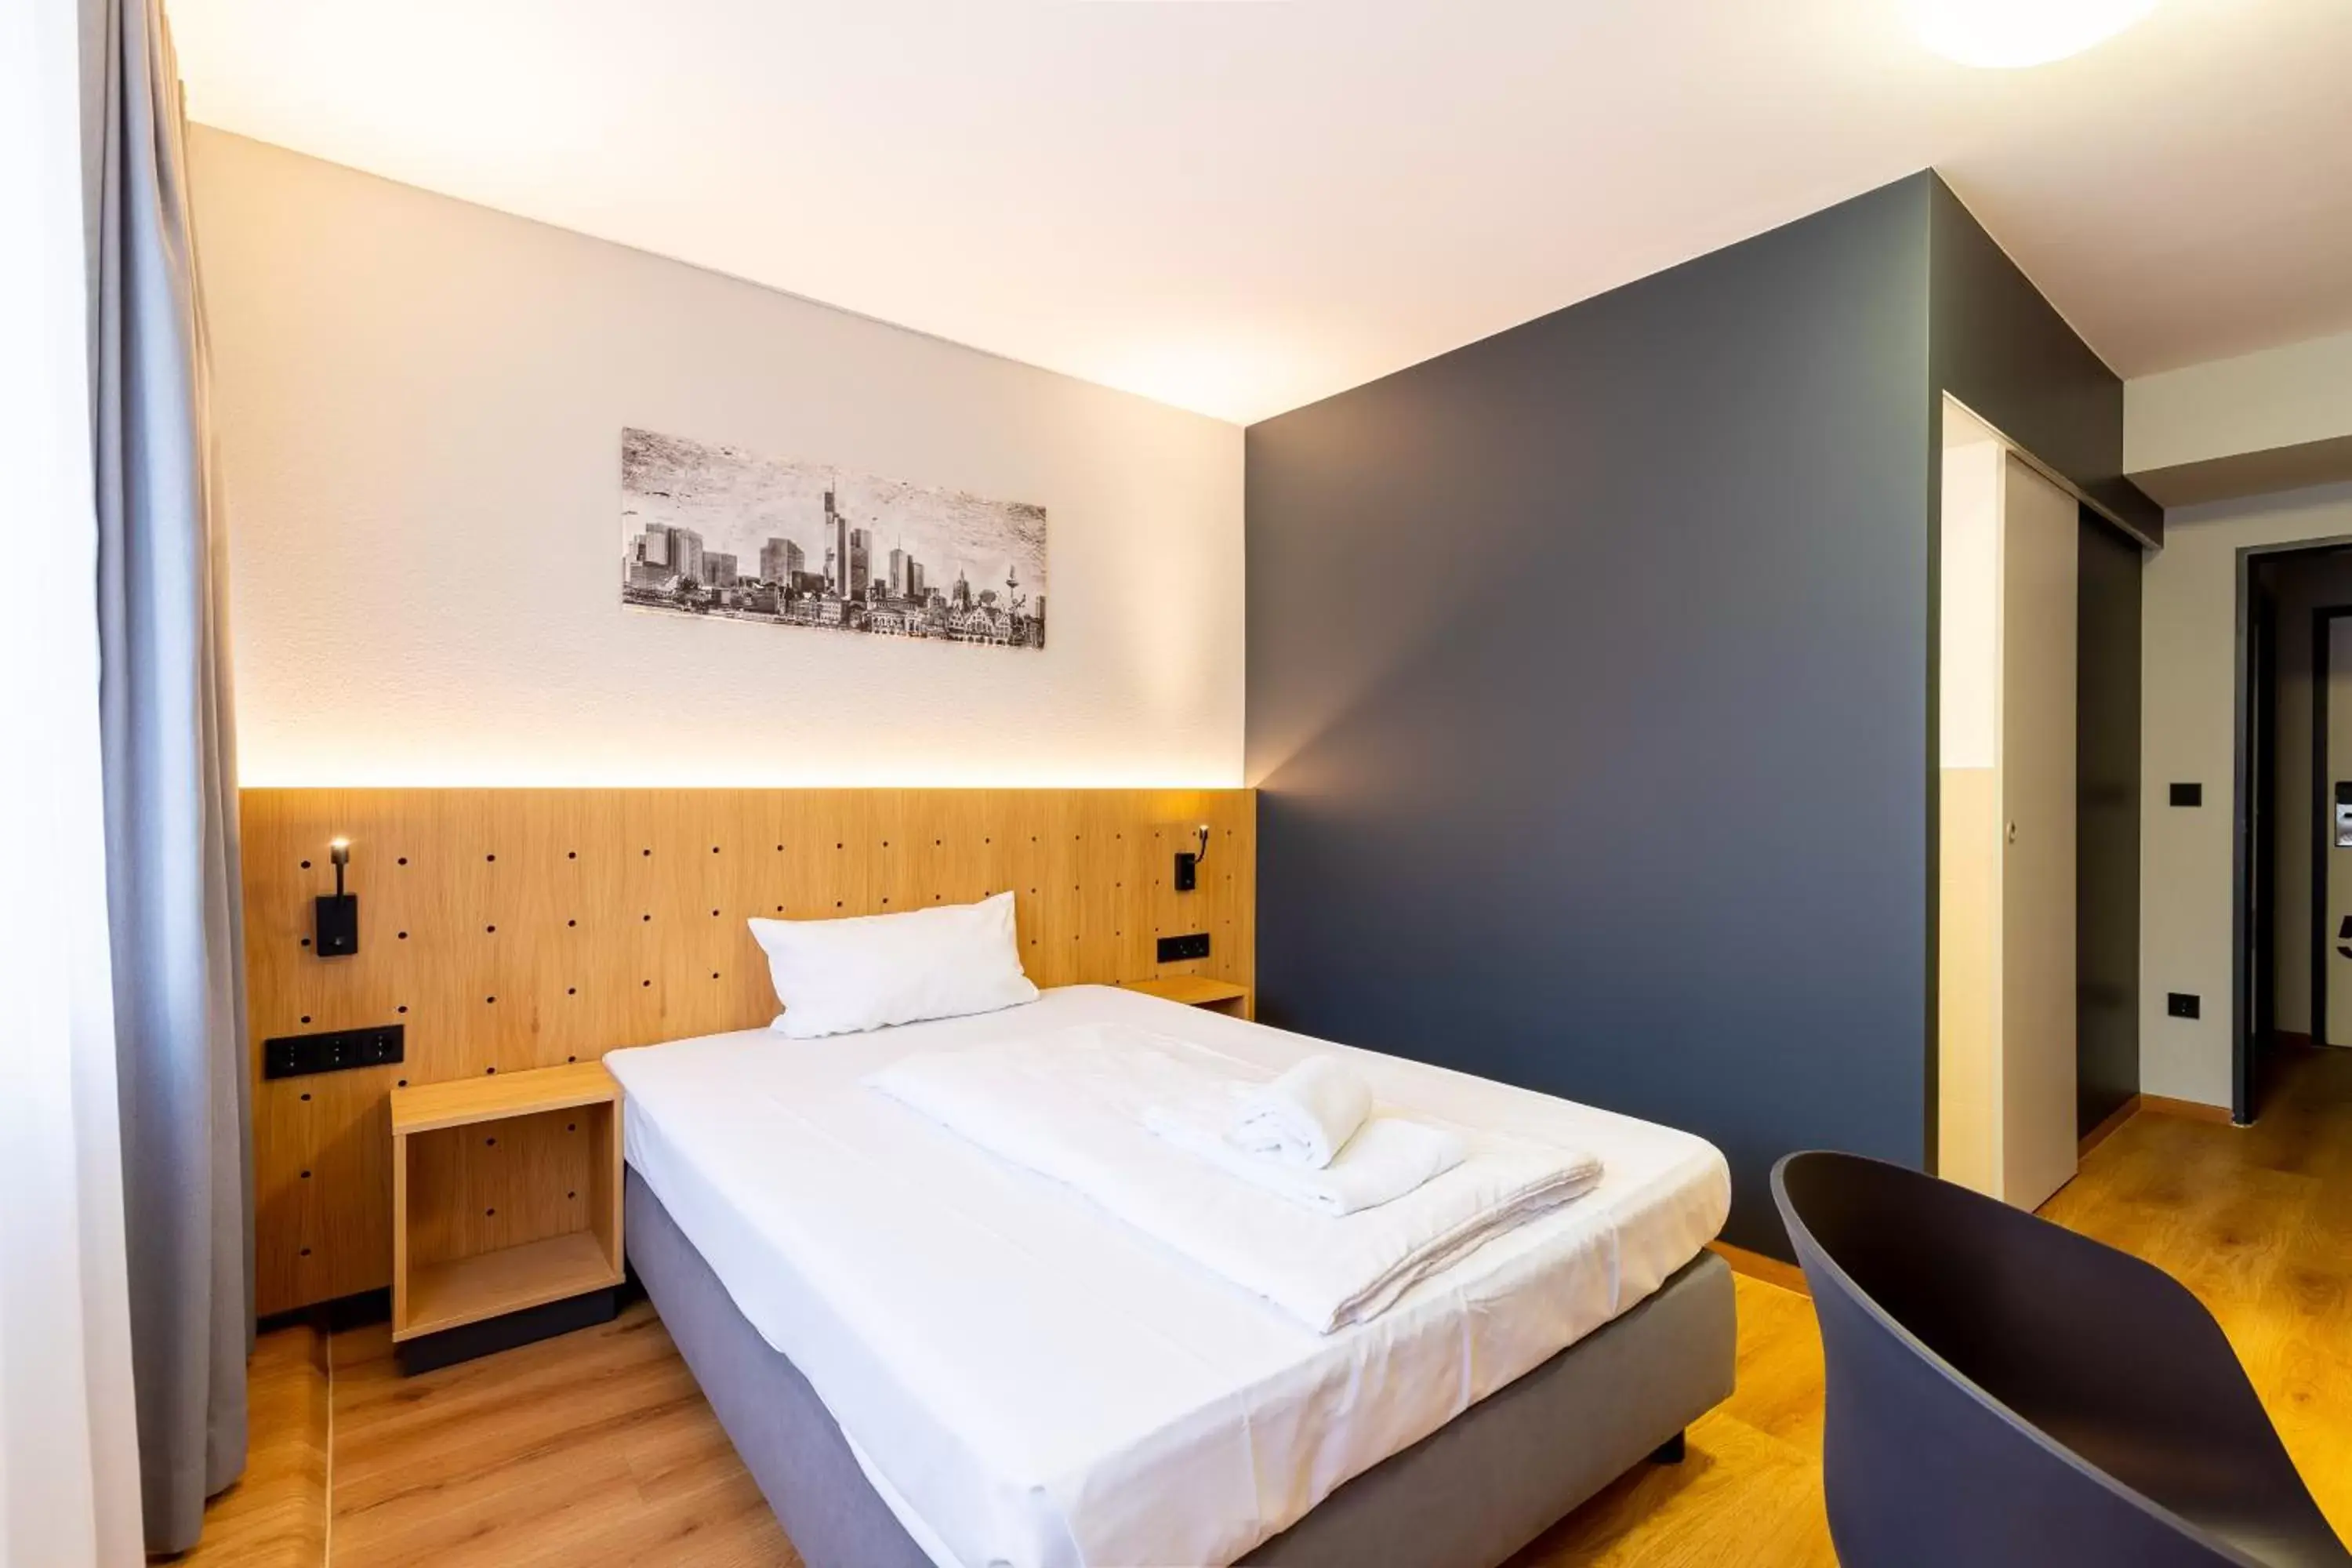 Bed in mk hotel berlin